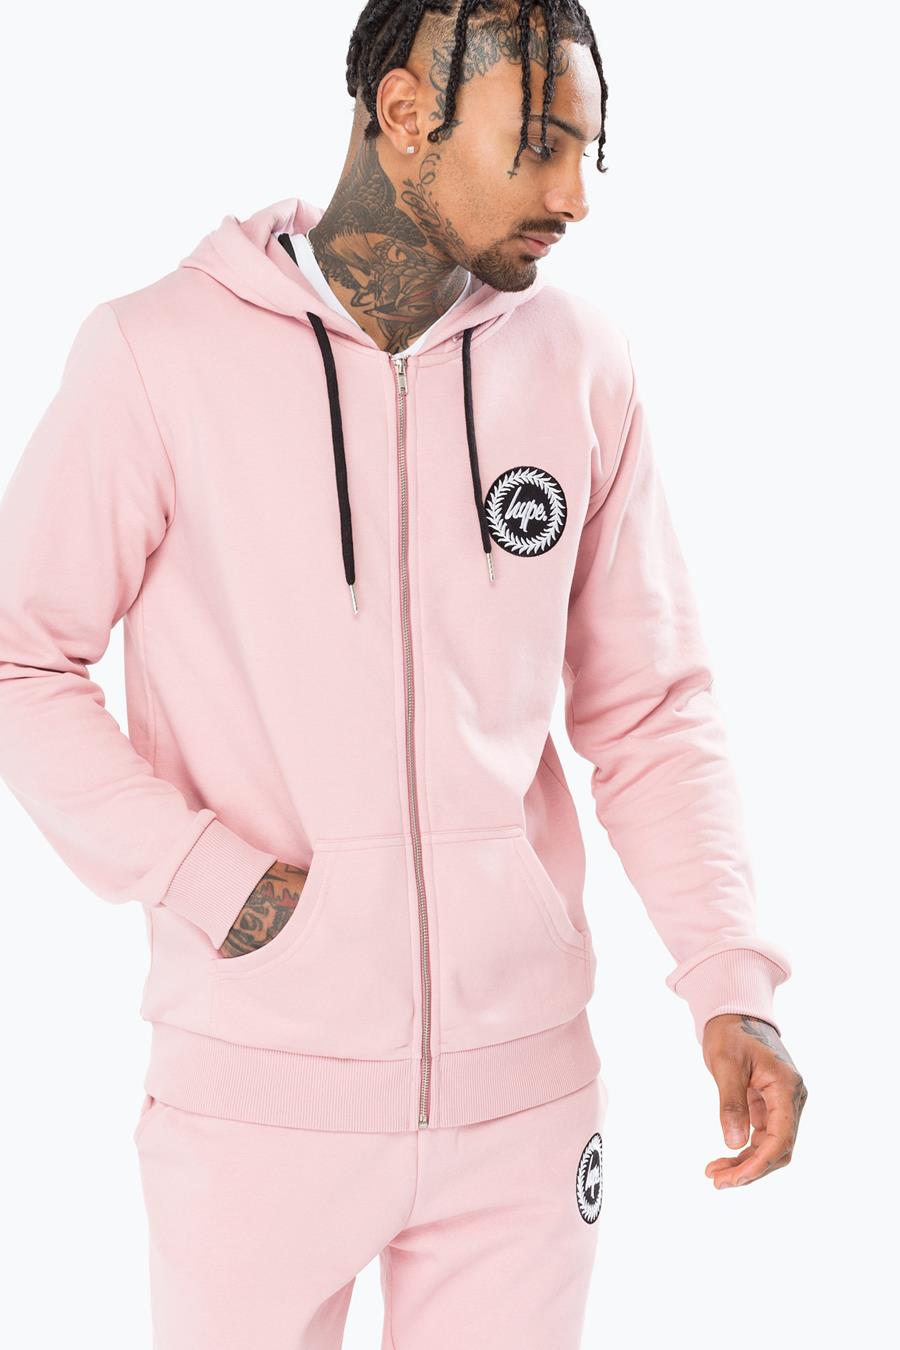 pink hoodie male